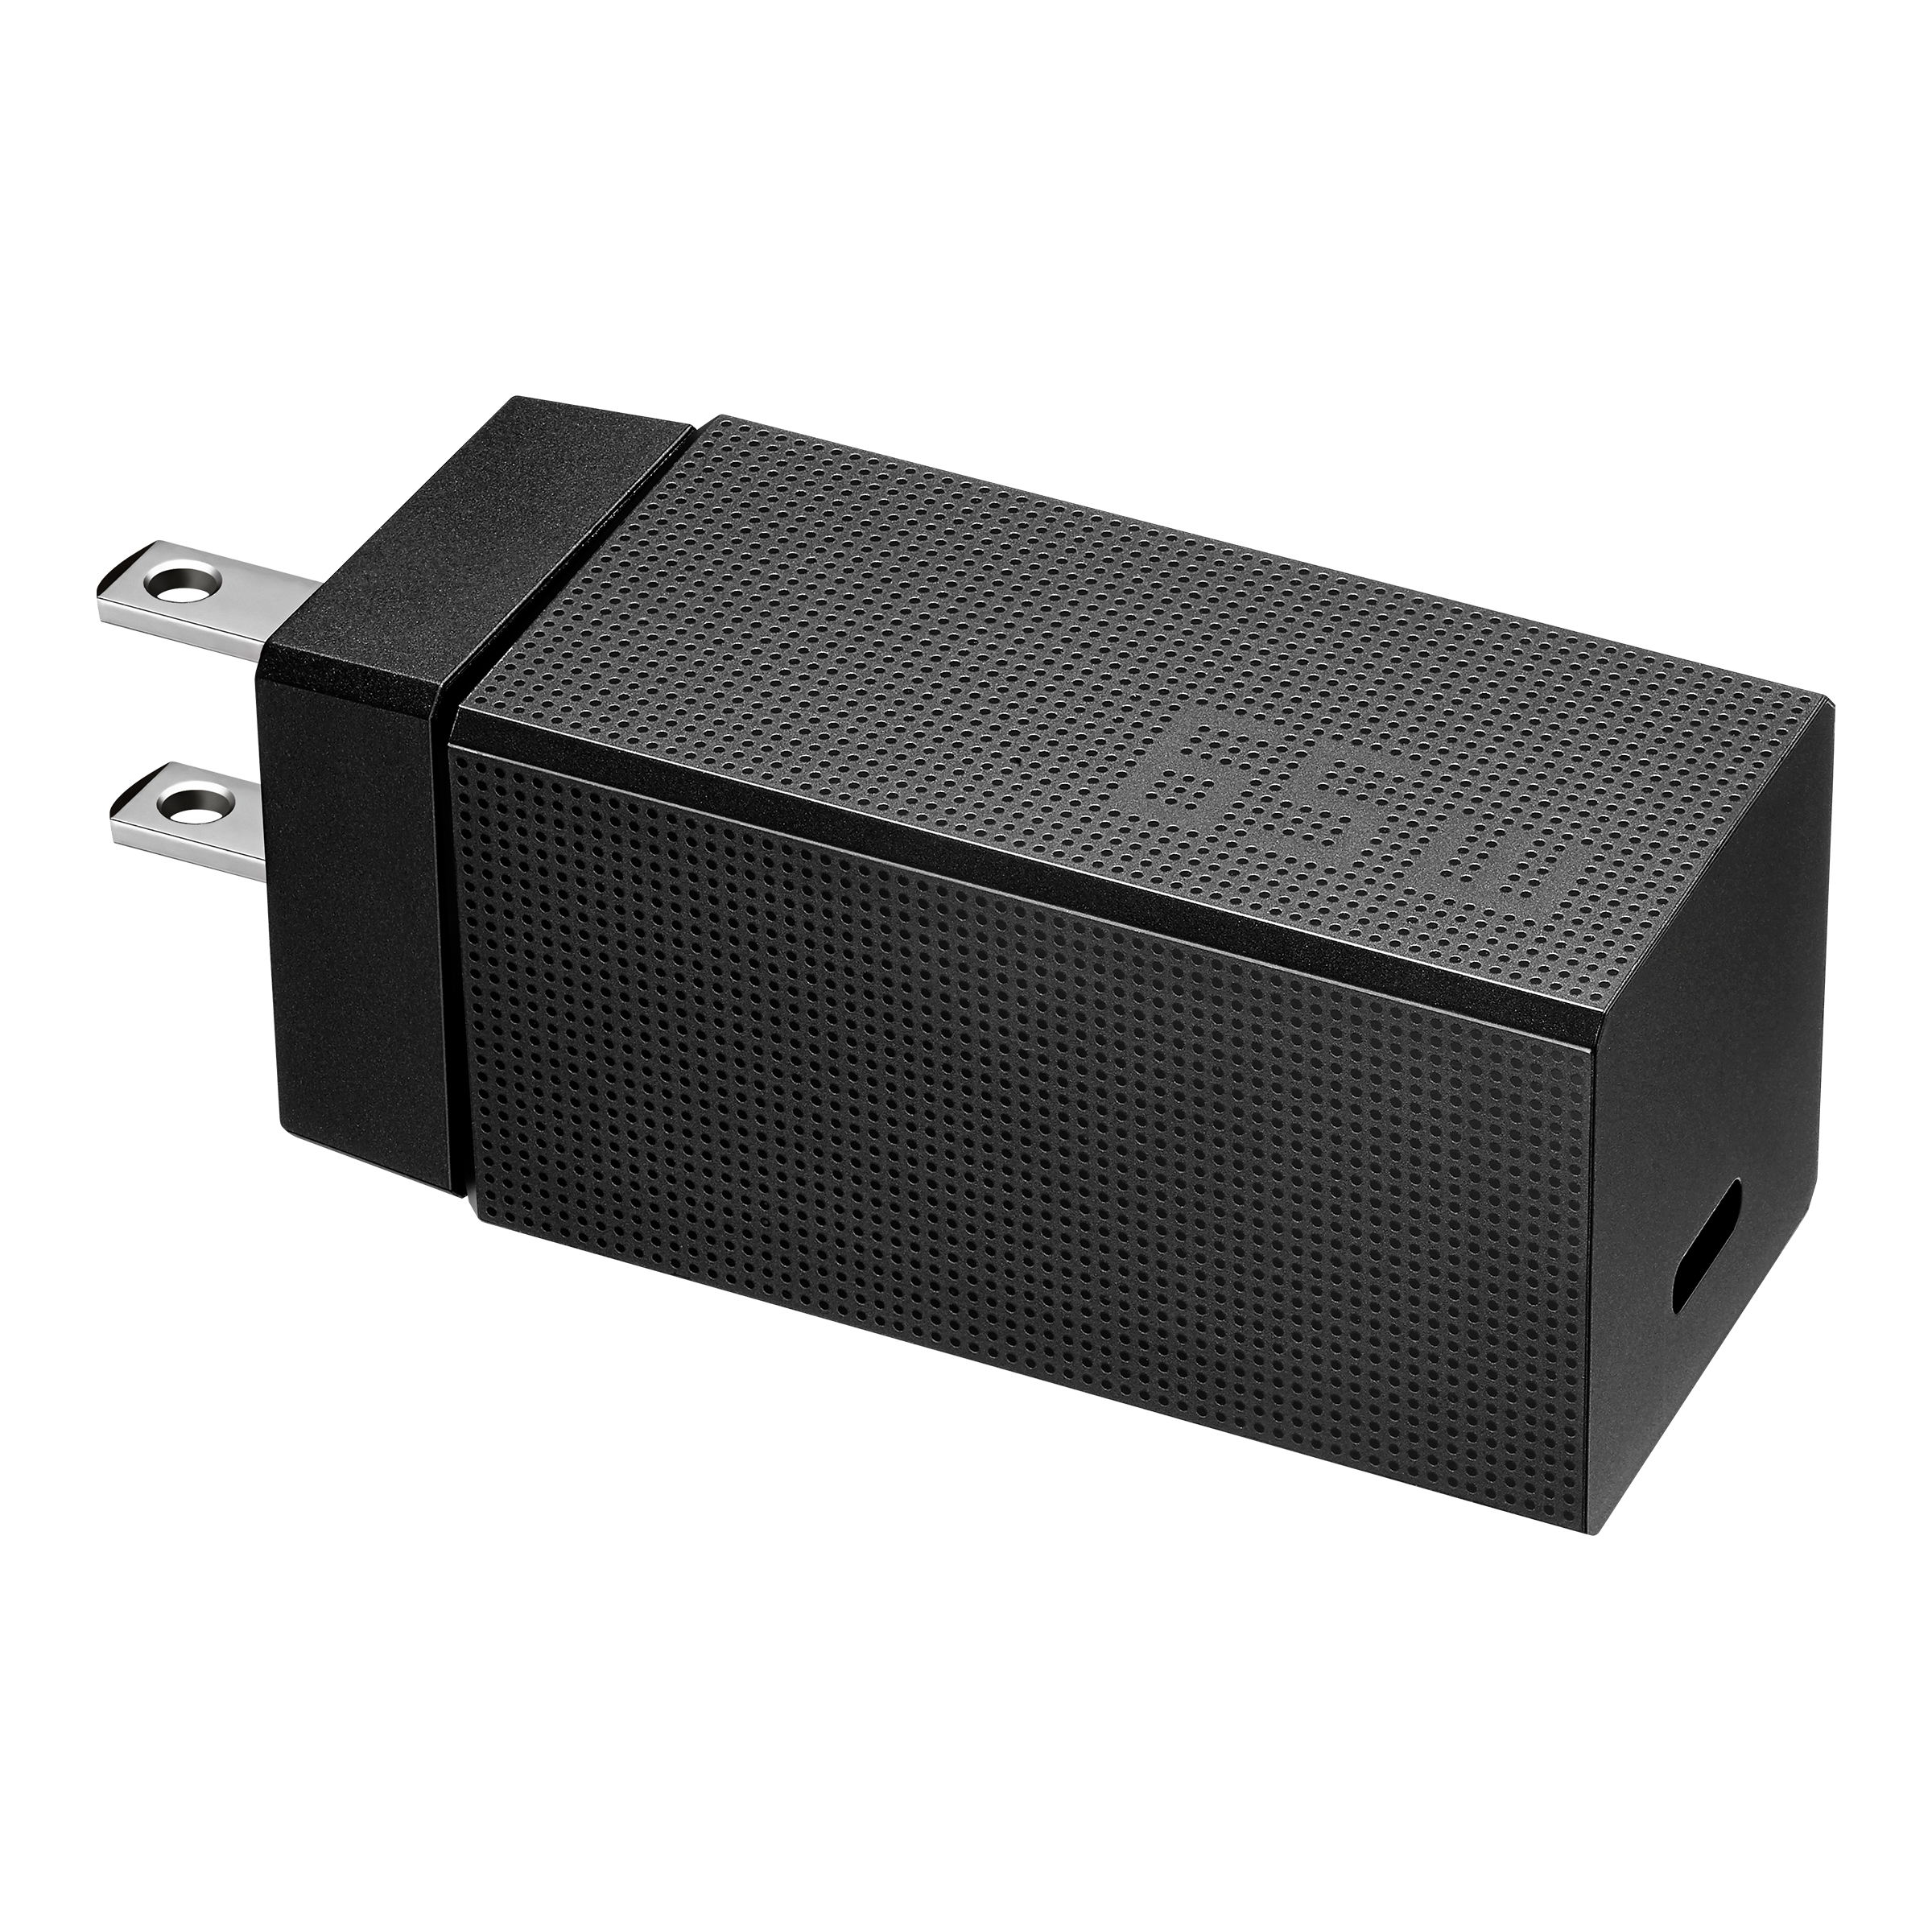 Adaptador de corriente USB-C de 65 W de ASUS (90XB04EN-MPW0M0